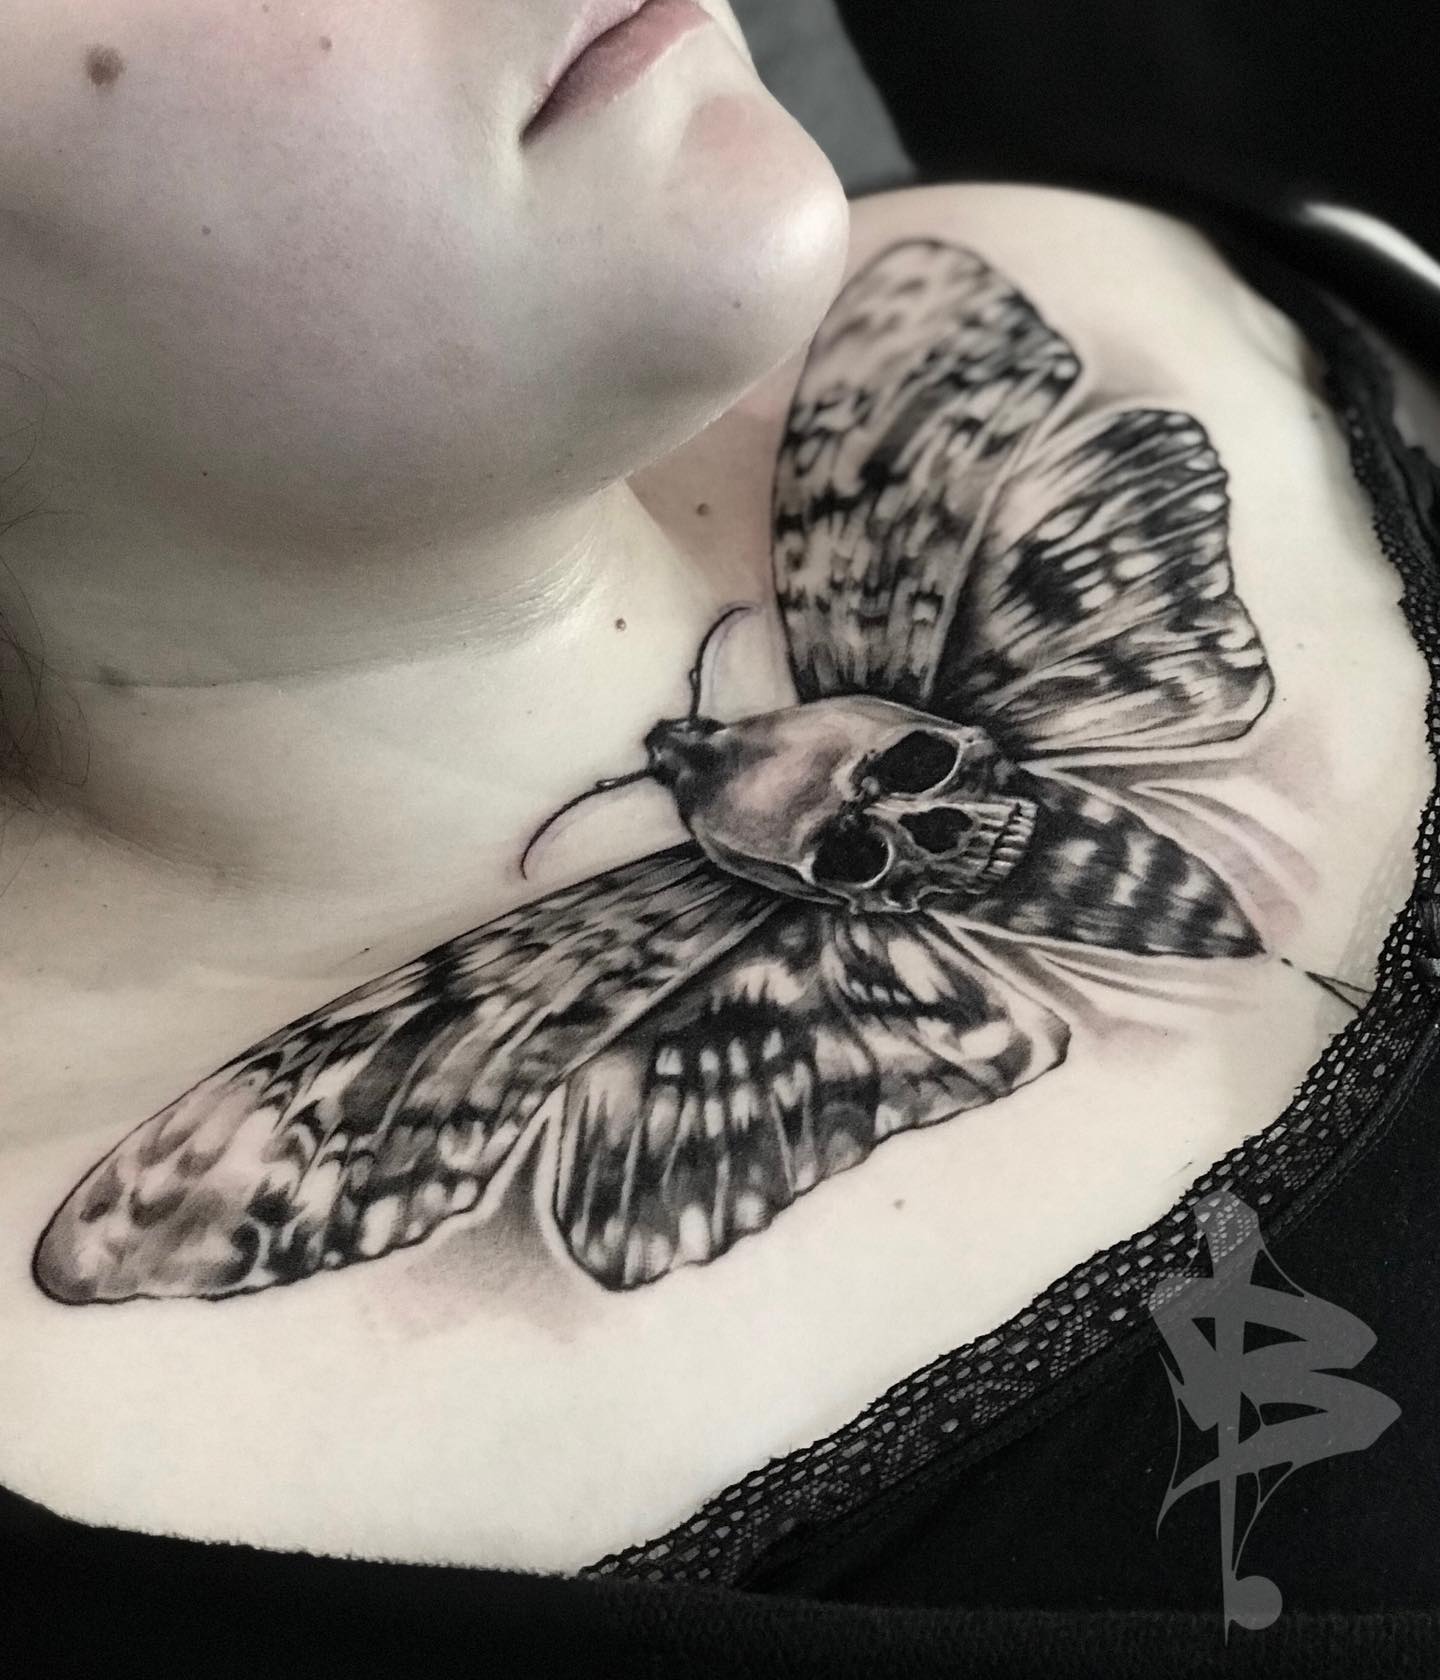 Tatuaje de pecho de una mariposa gigante y negra